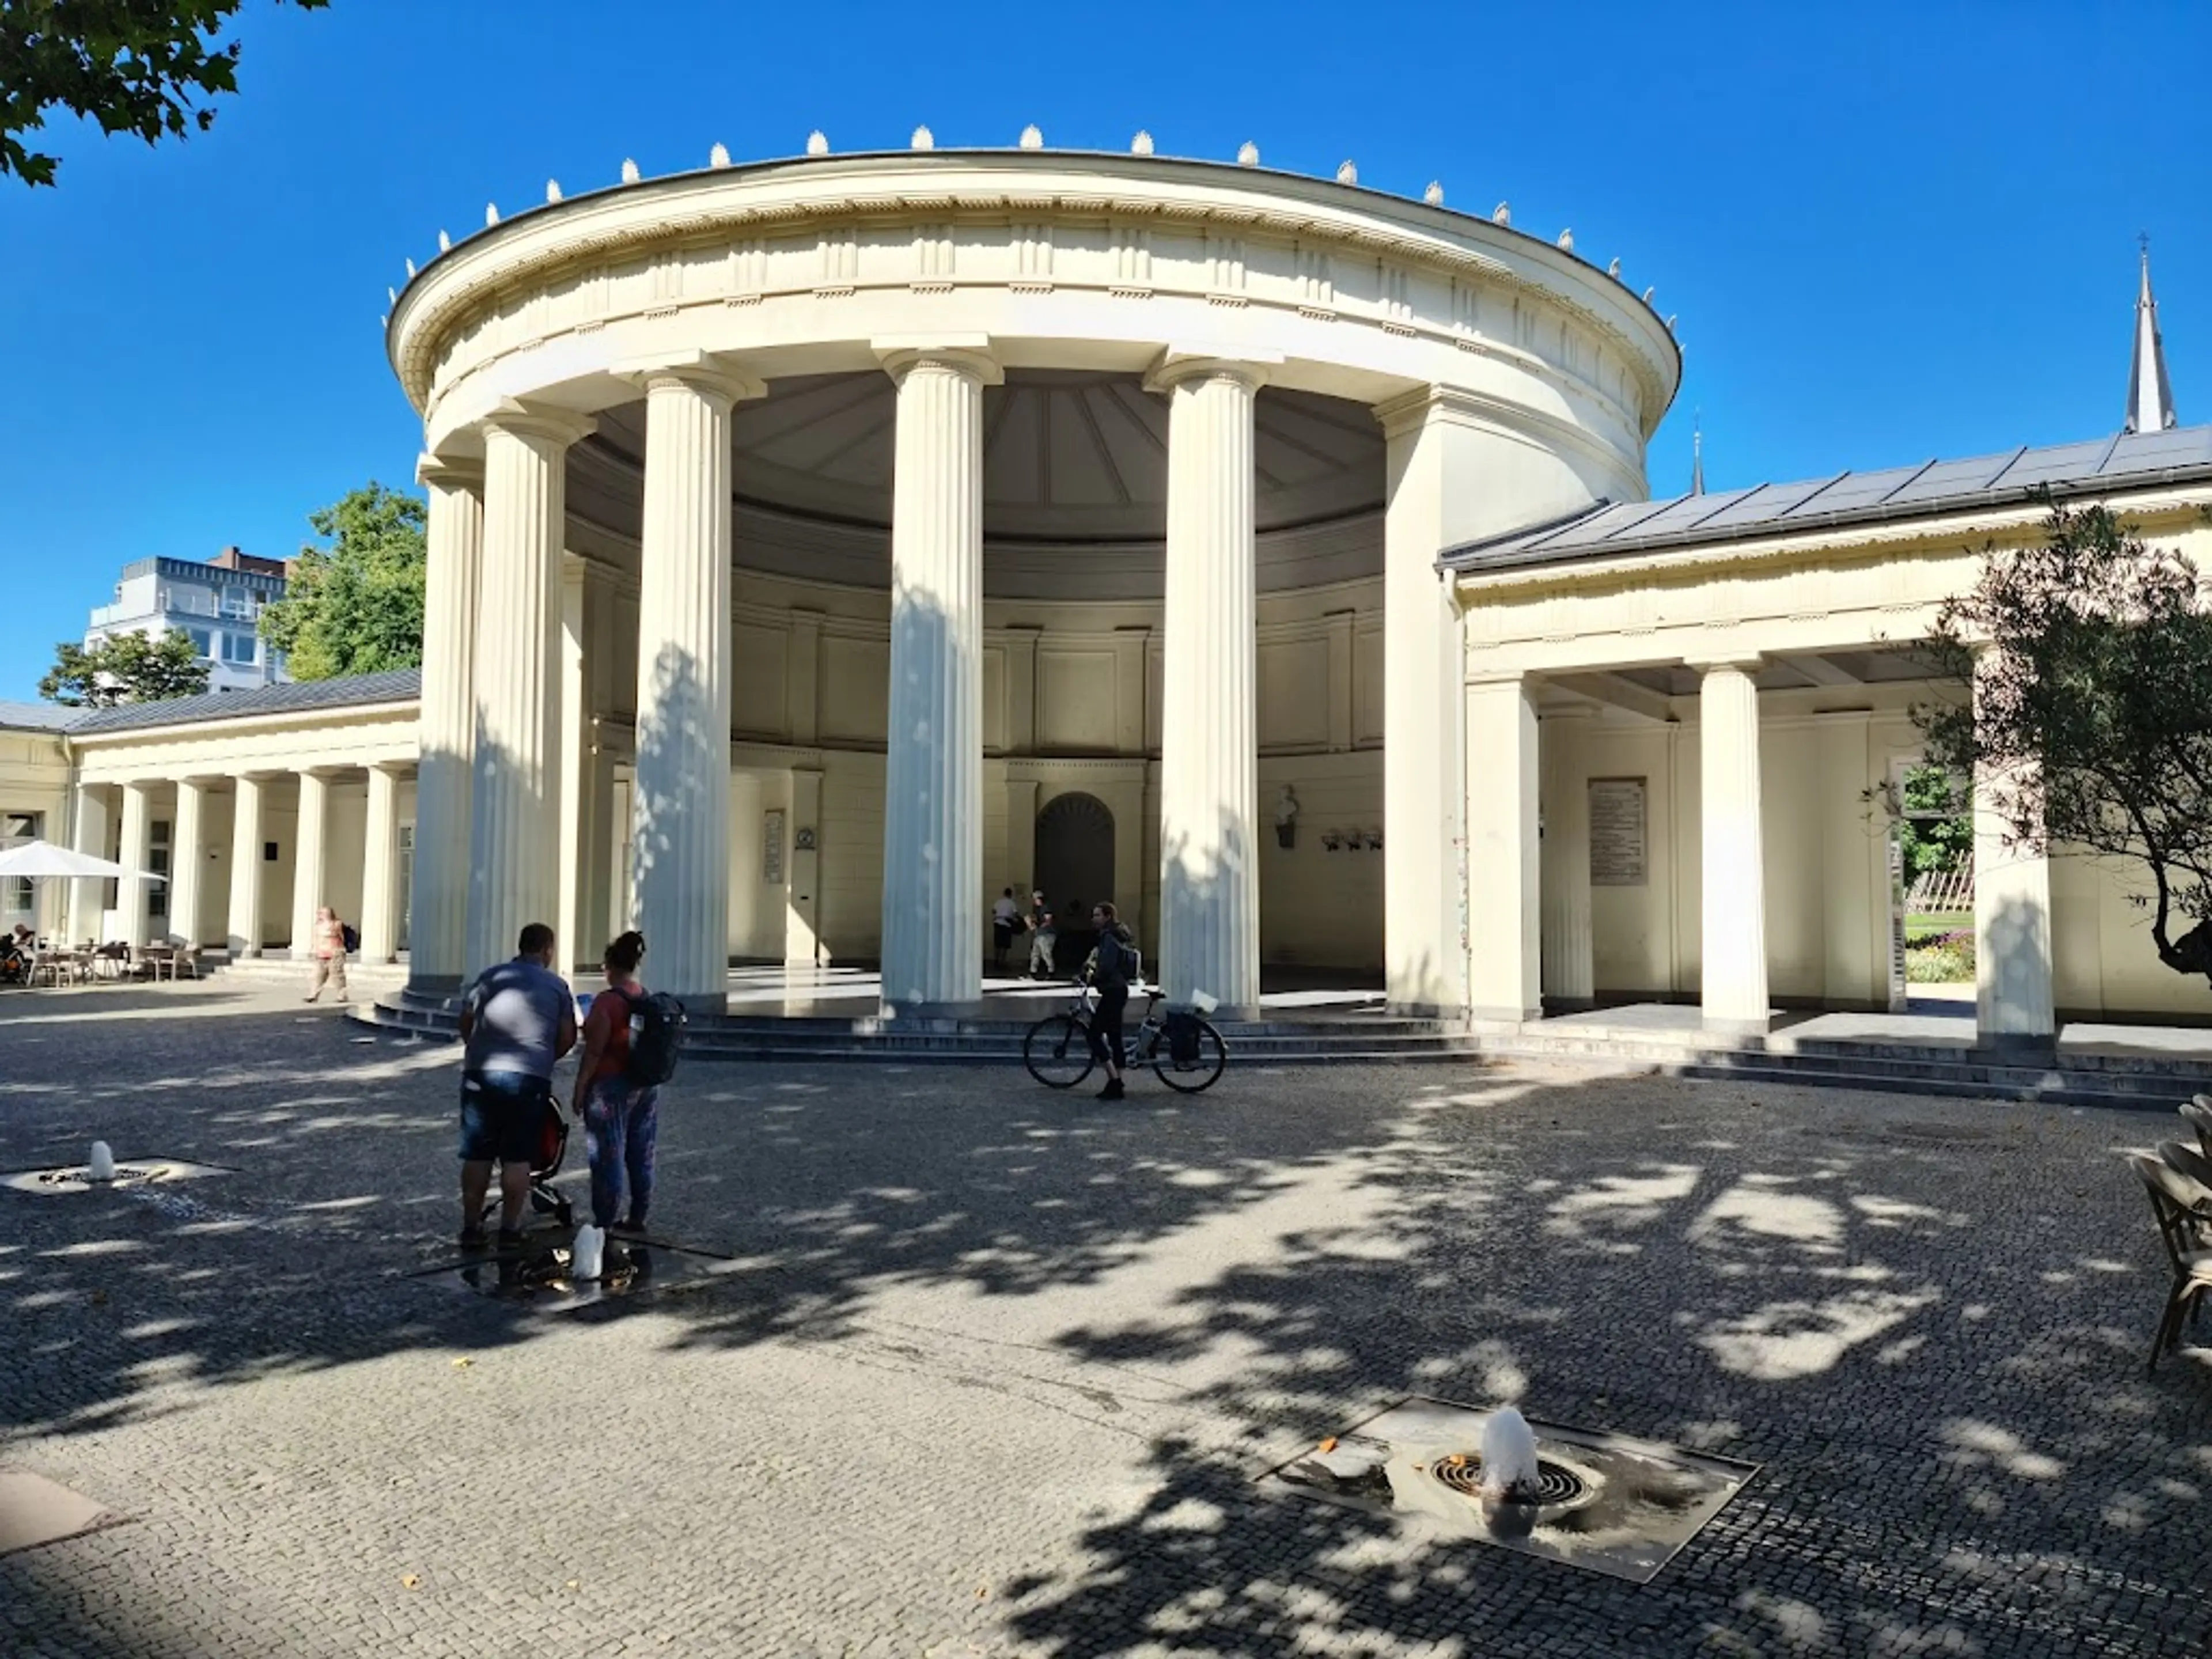 Elisenbrunnen